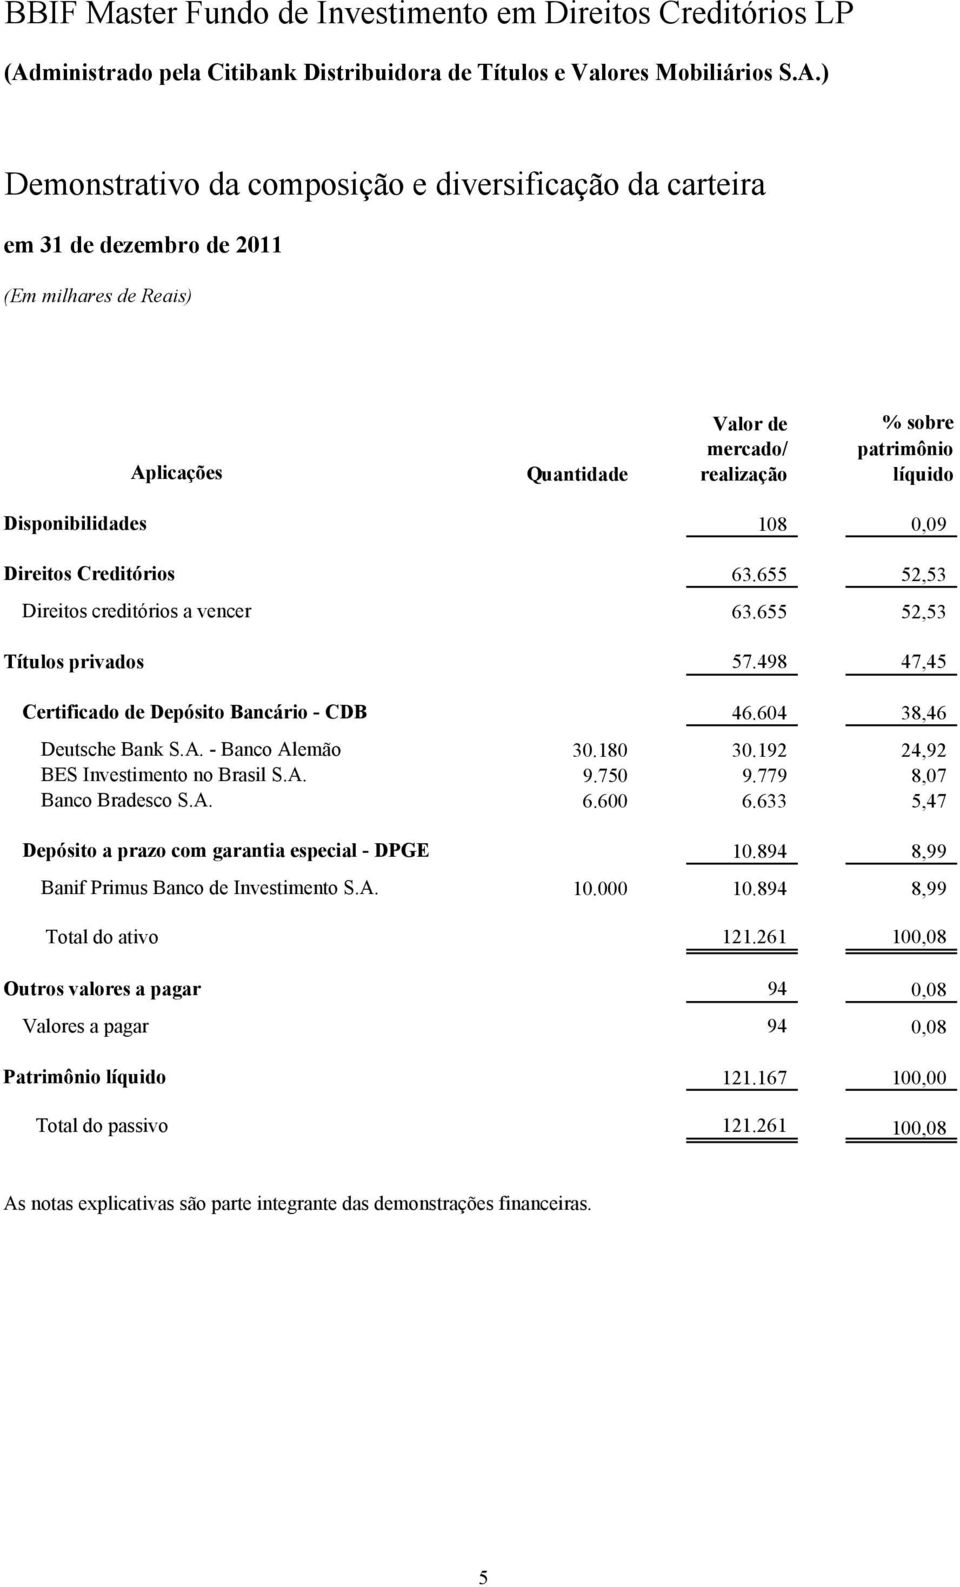 192 24,92 BES Investimento no Brasil S.A. 9.750 9.779 8,07 Banco Bradesco S.A. 6.600 6.633 5,47 Depósito a prazo com garantia especial - DPGE 10.894 8,99 Banif Primus Banco de Investimento S.A. 10.000 10.